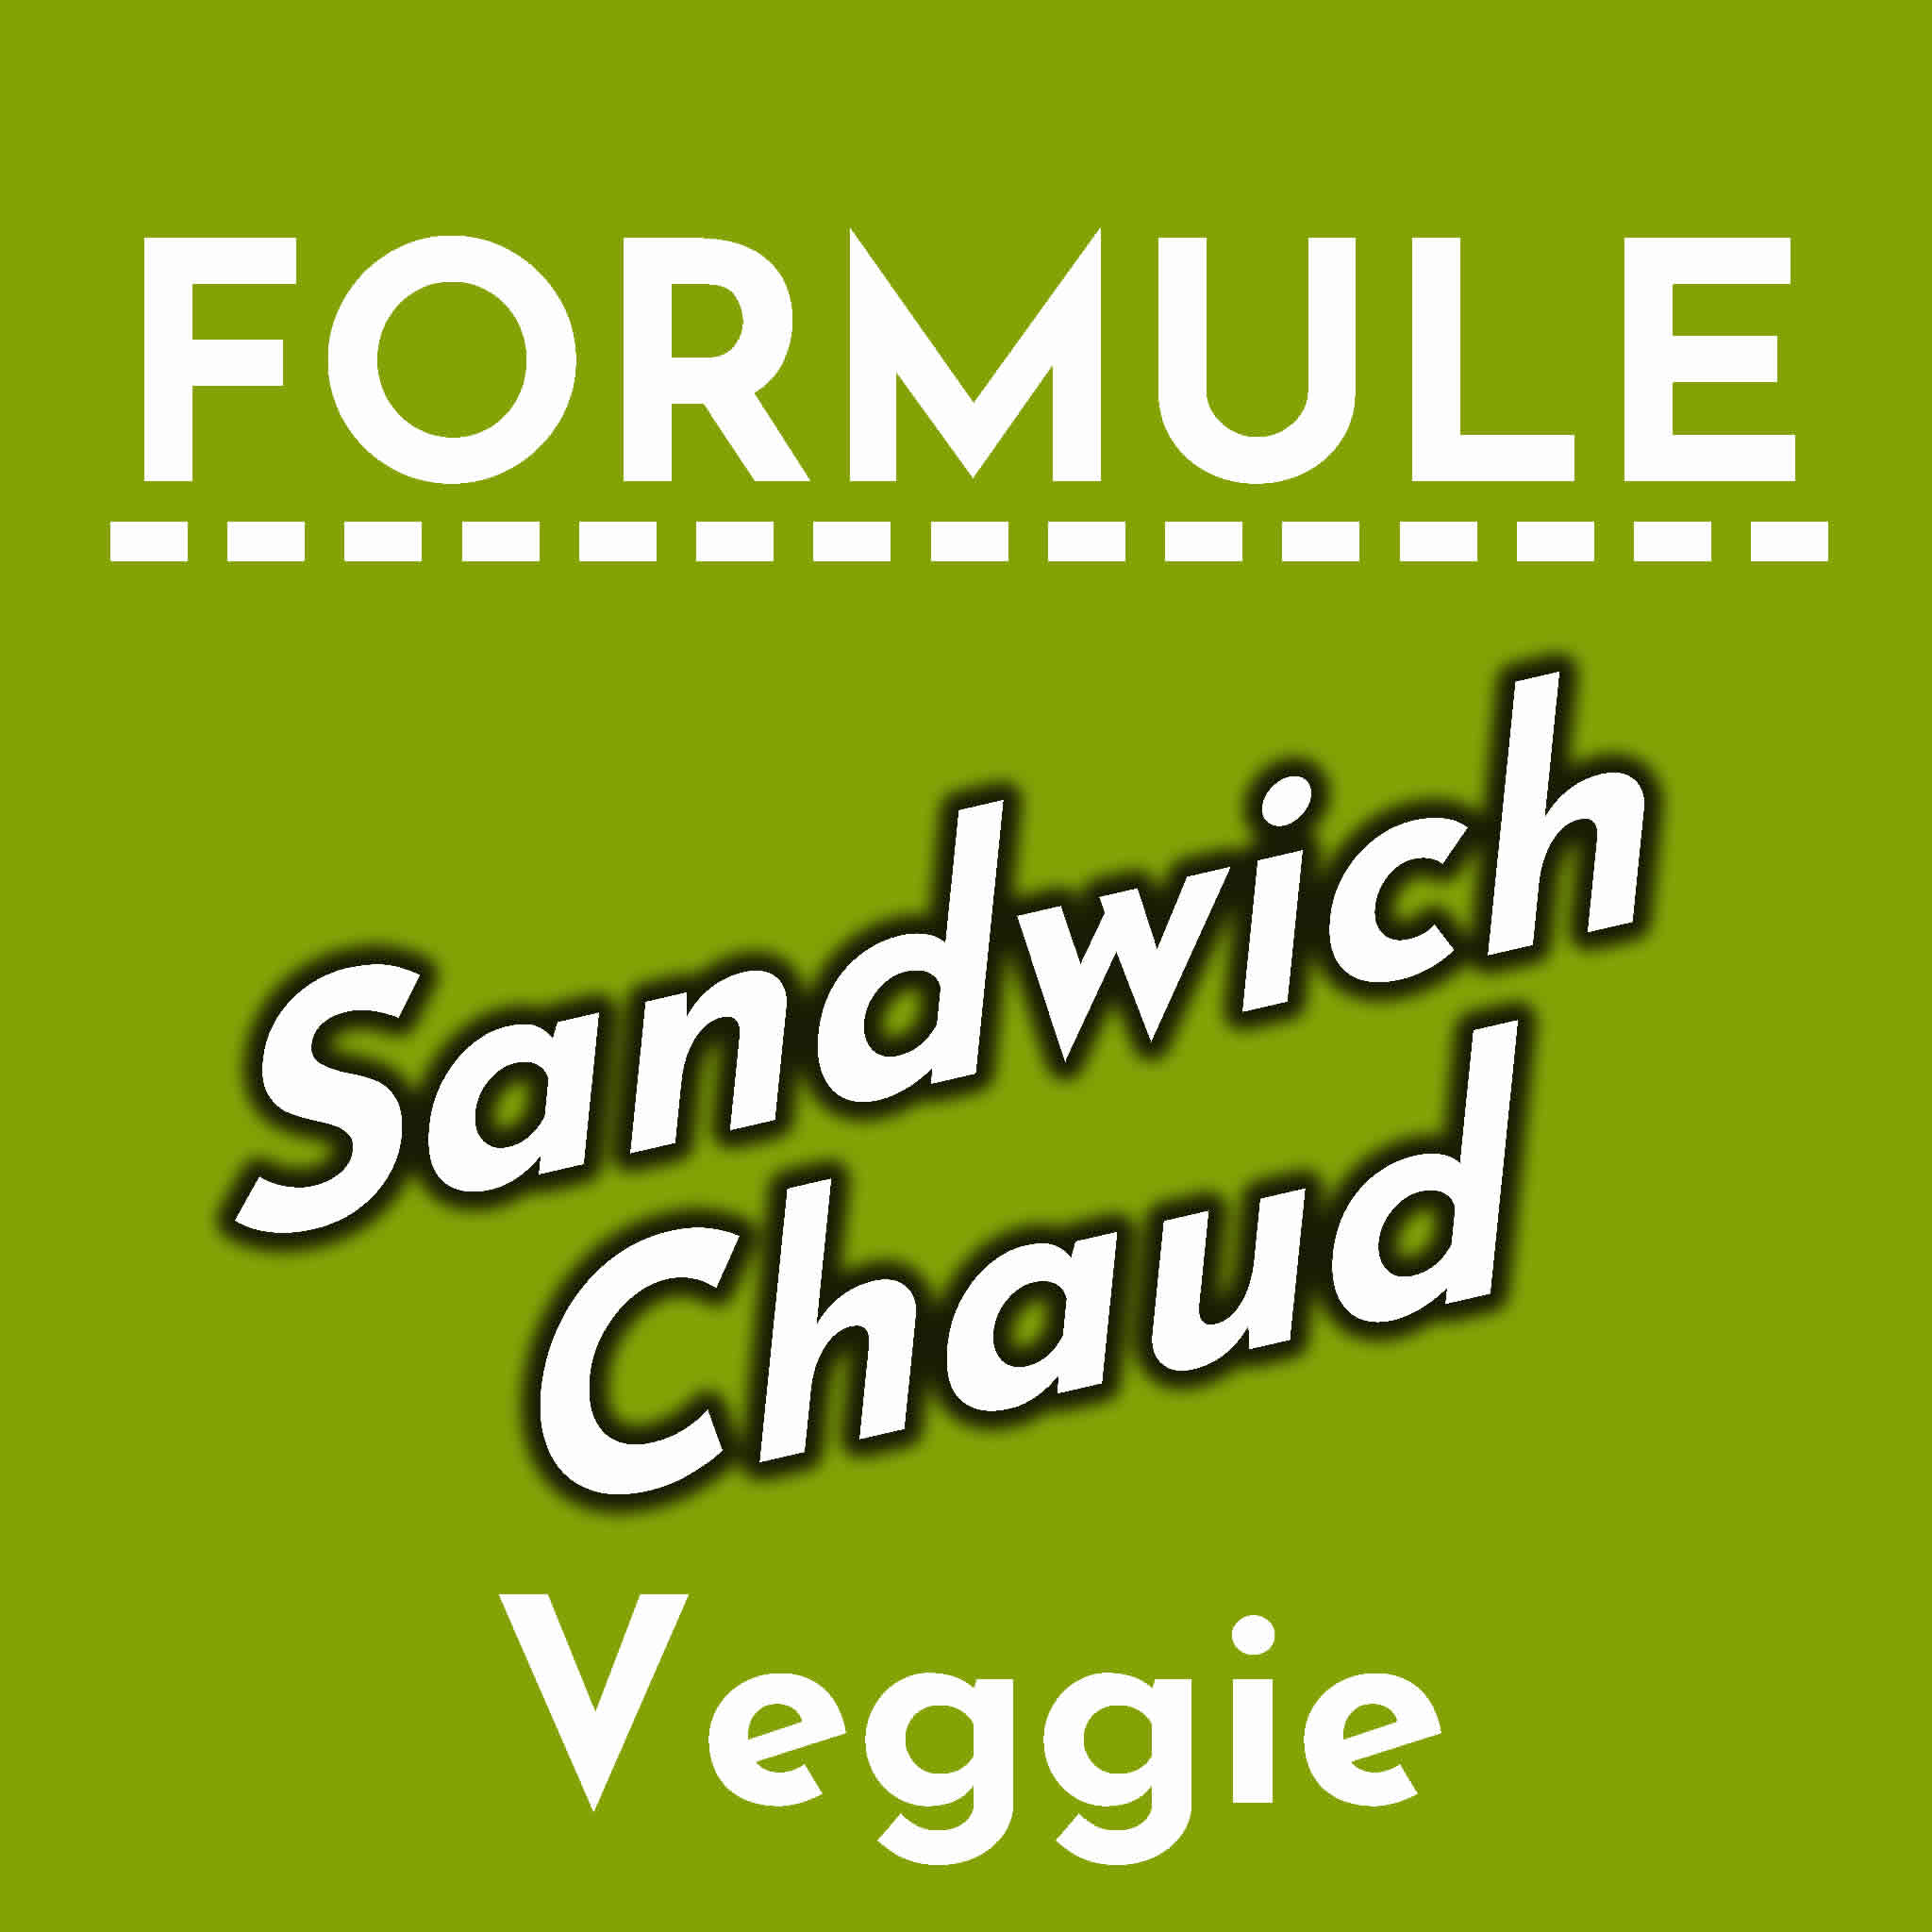 Formule Sandwich Chaud Végétarien Frites